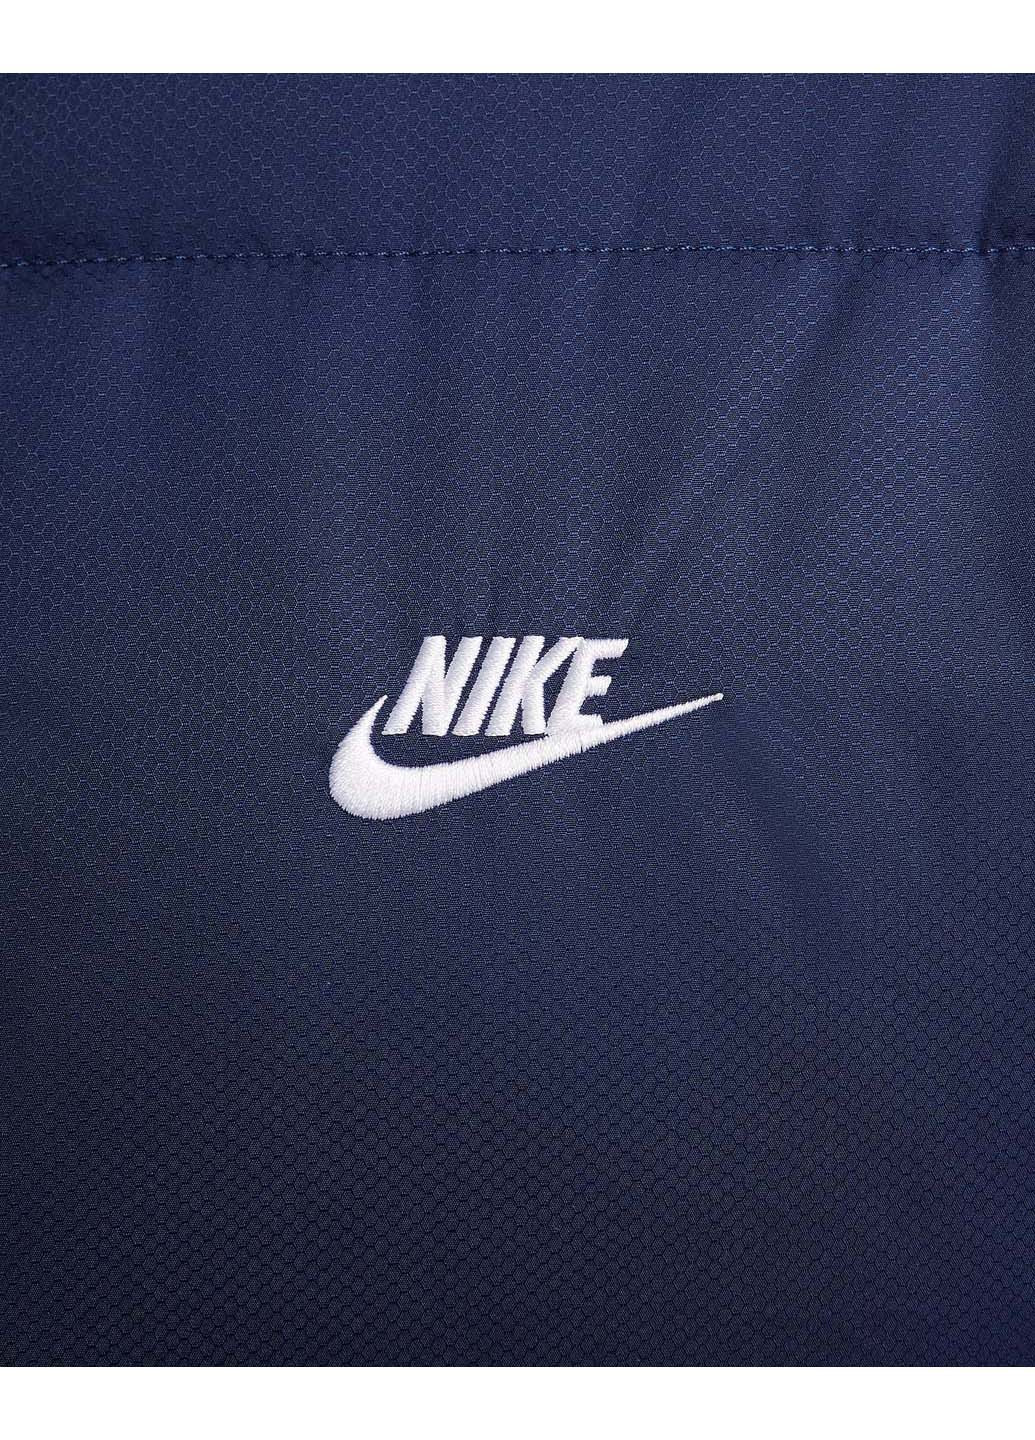 Темно-синяя демисезонная куртка sportswear club puffer Nike